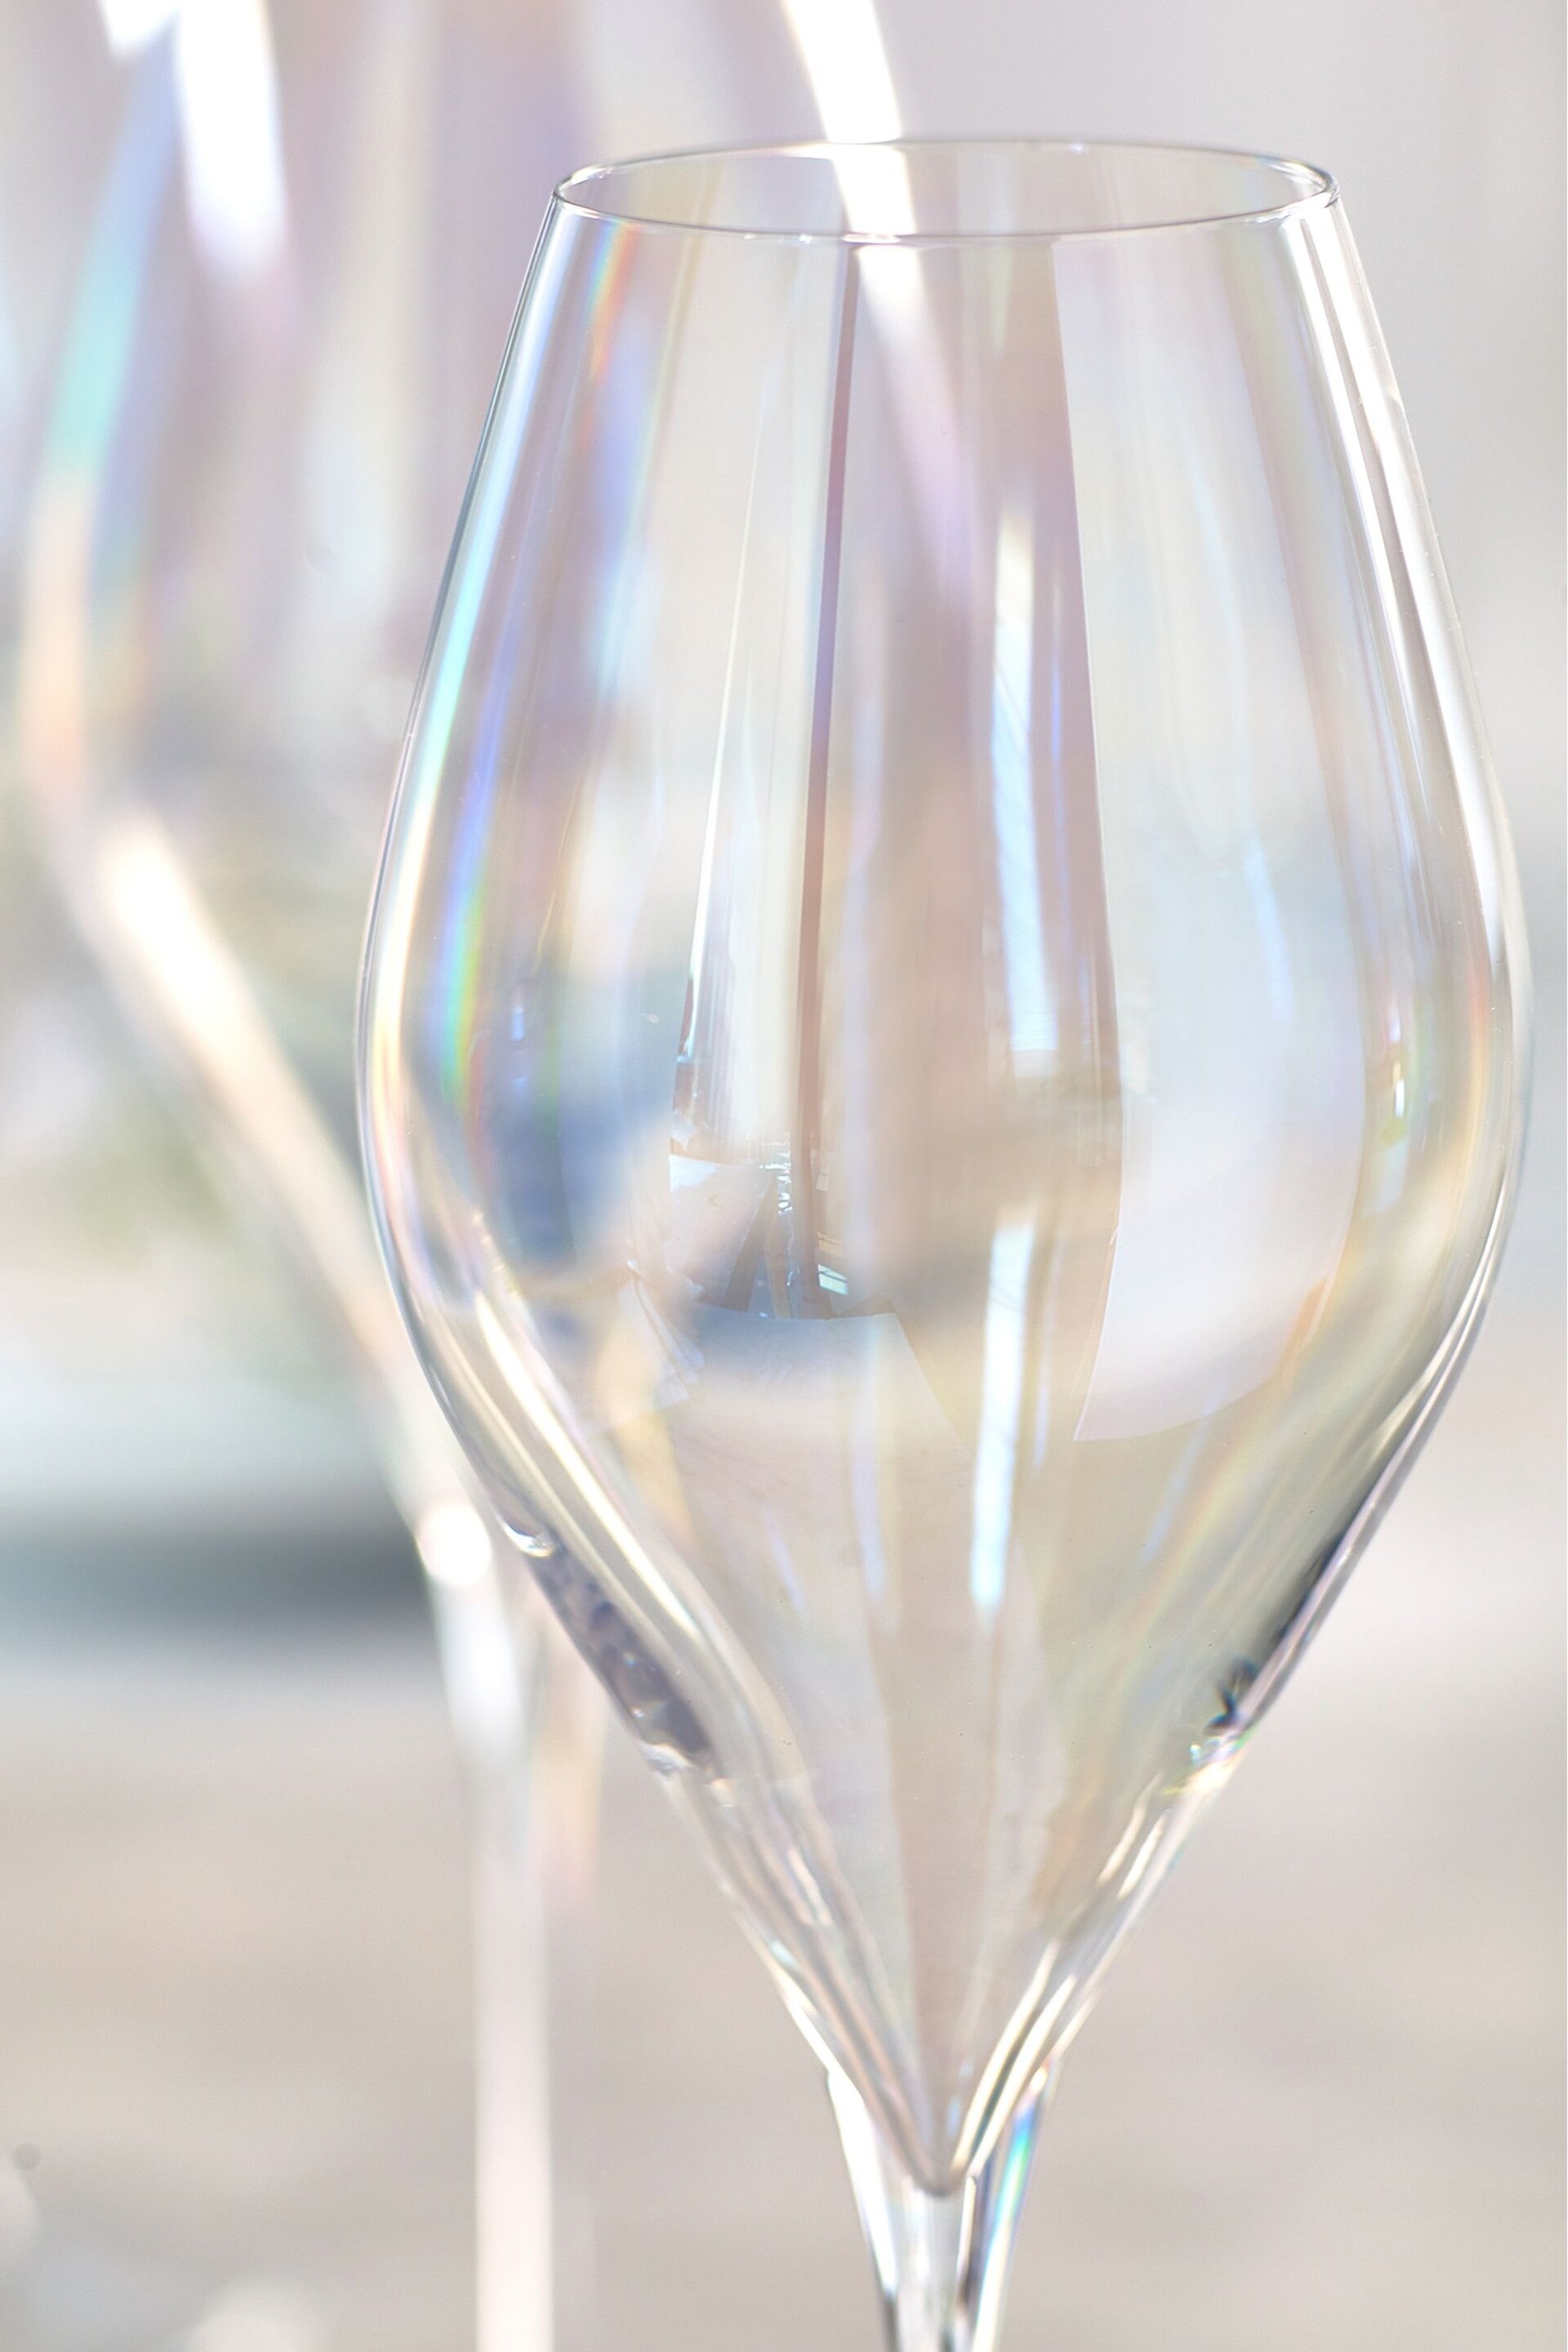 Paris Iridescent Lustre Set of 4 White Wine Glasses - Image 3 of 3